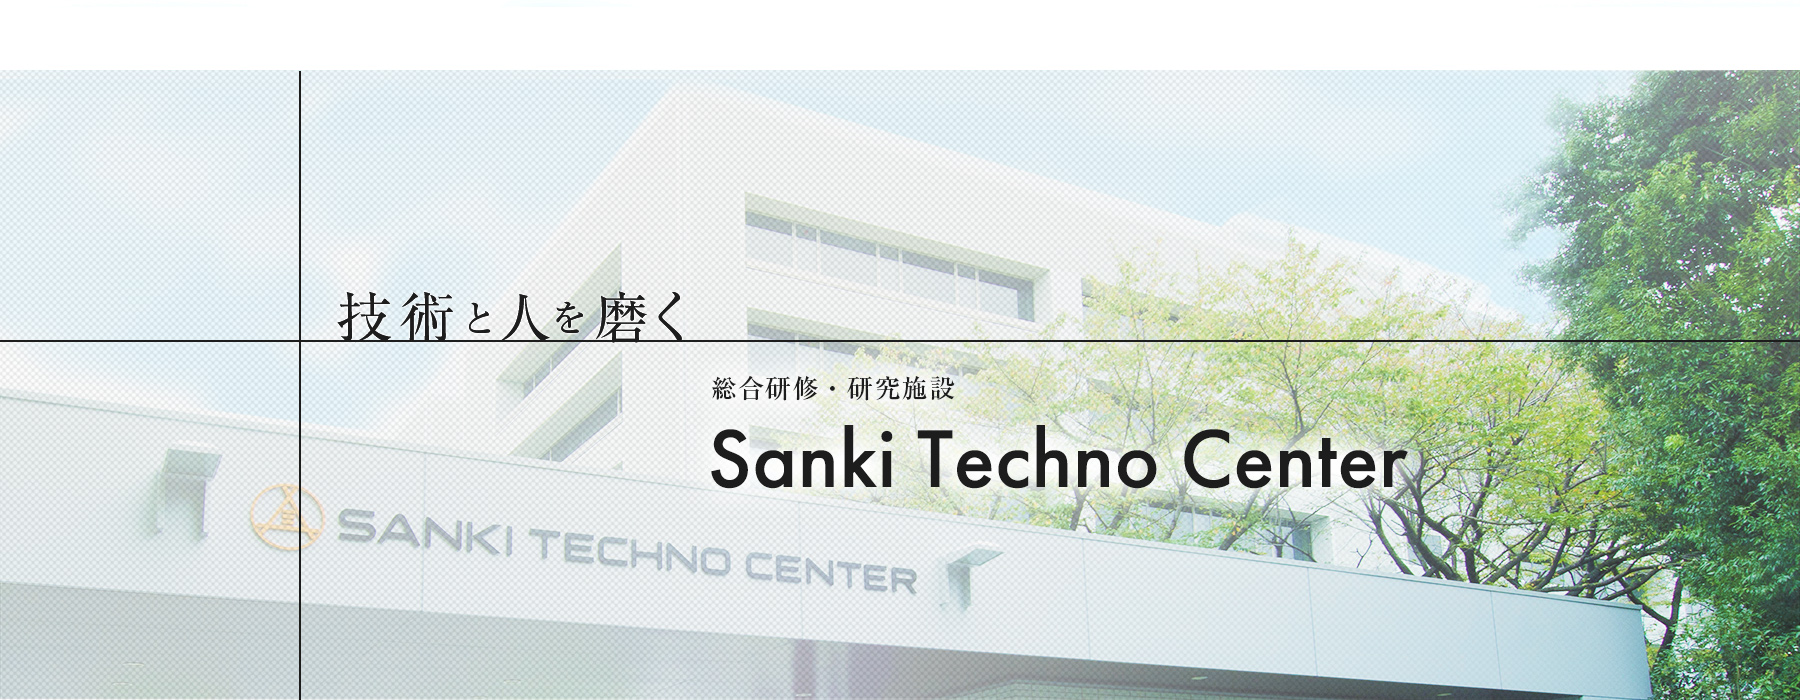 技術と人を磨く 総合研修・研究施設 Sanki Techno Center